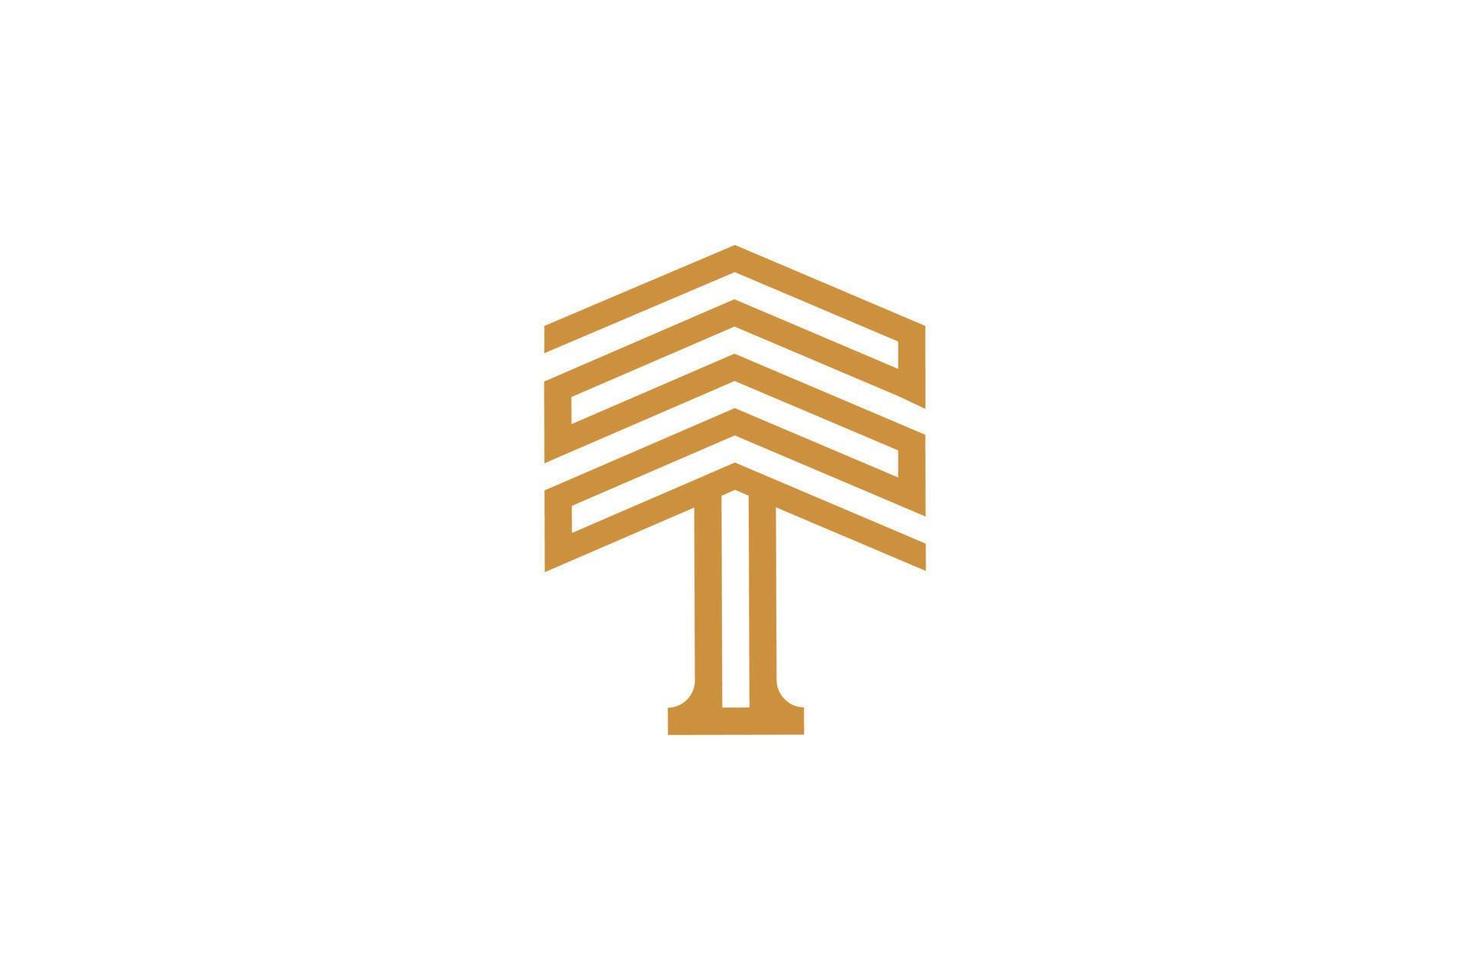 brief t monoline logo ontwerp vector